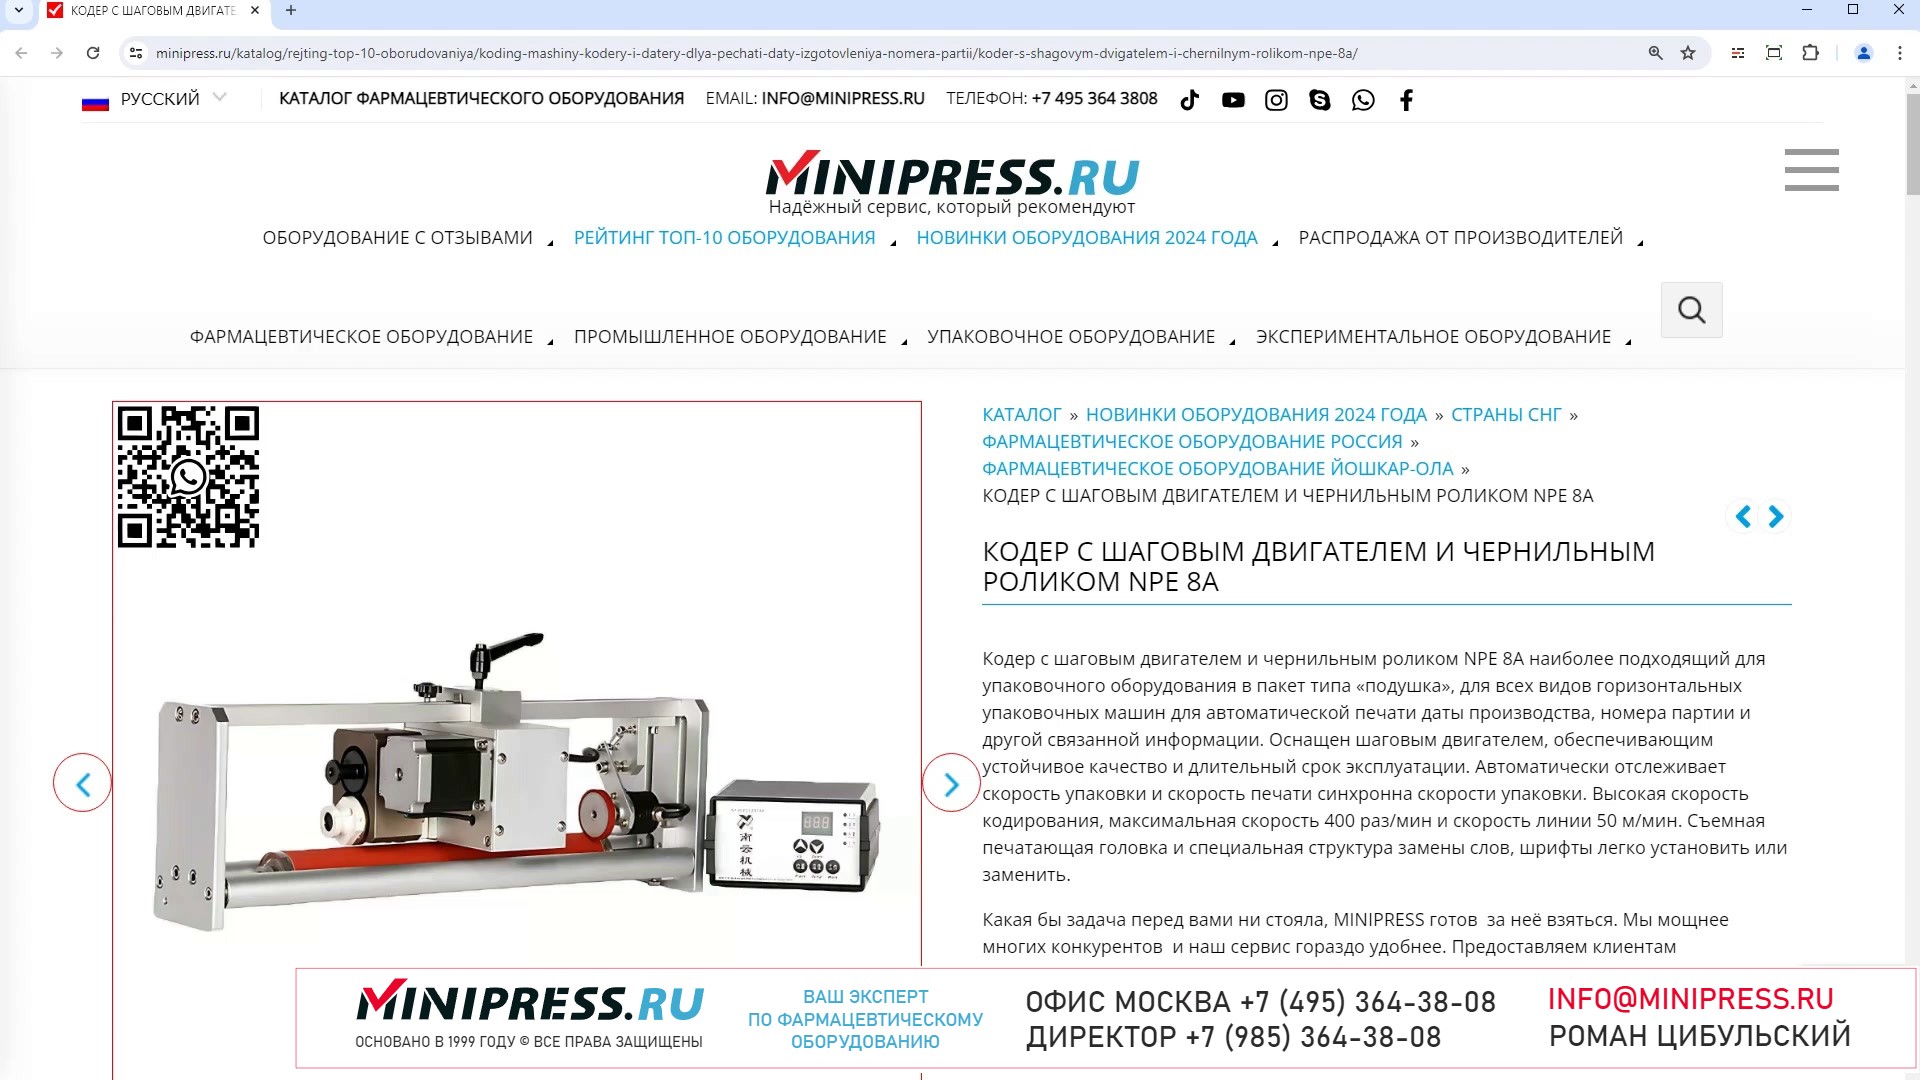 Minipress.ru Кодер с шаговым двигателем и чернильным роликом NPE 8A